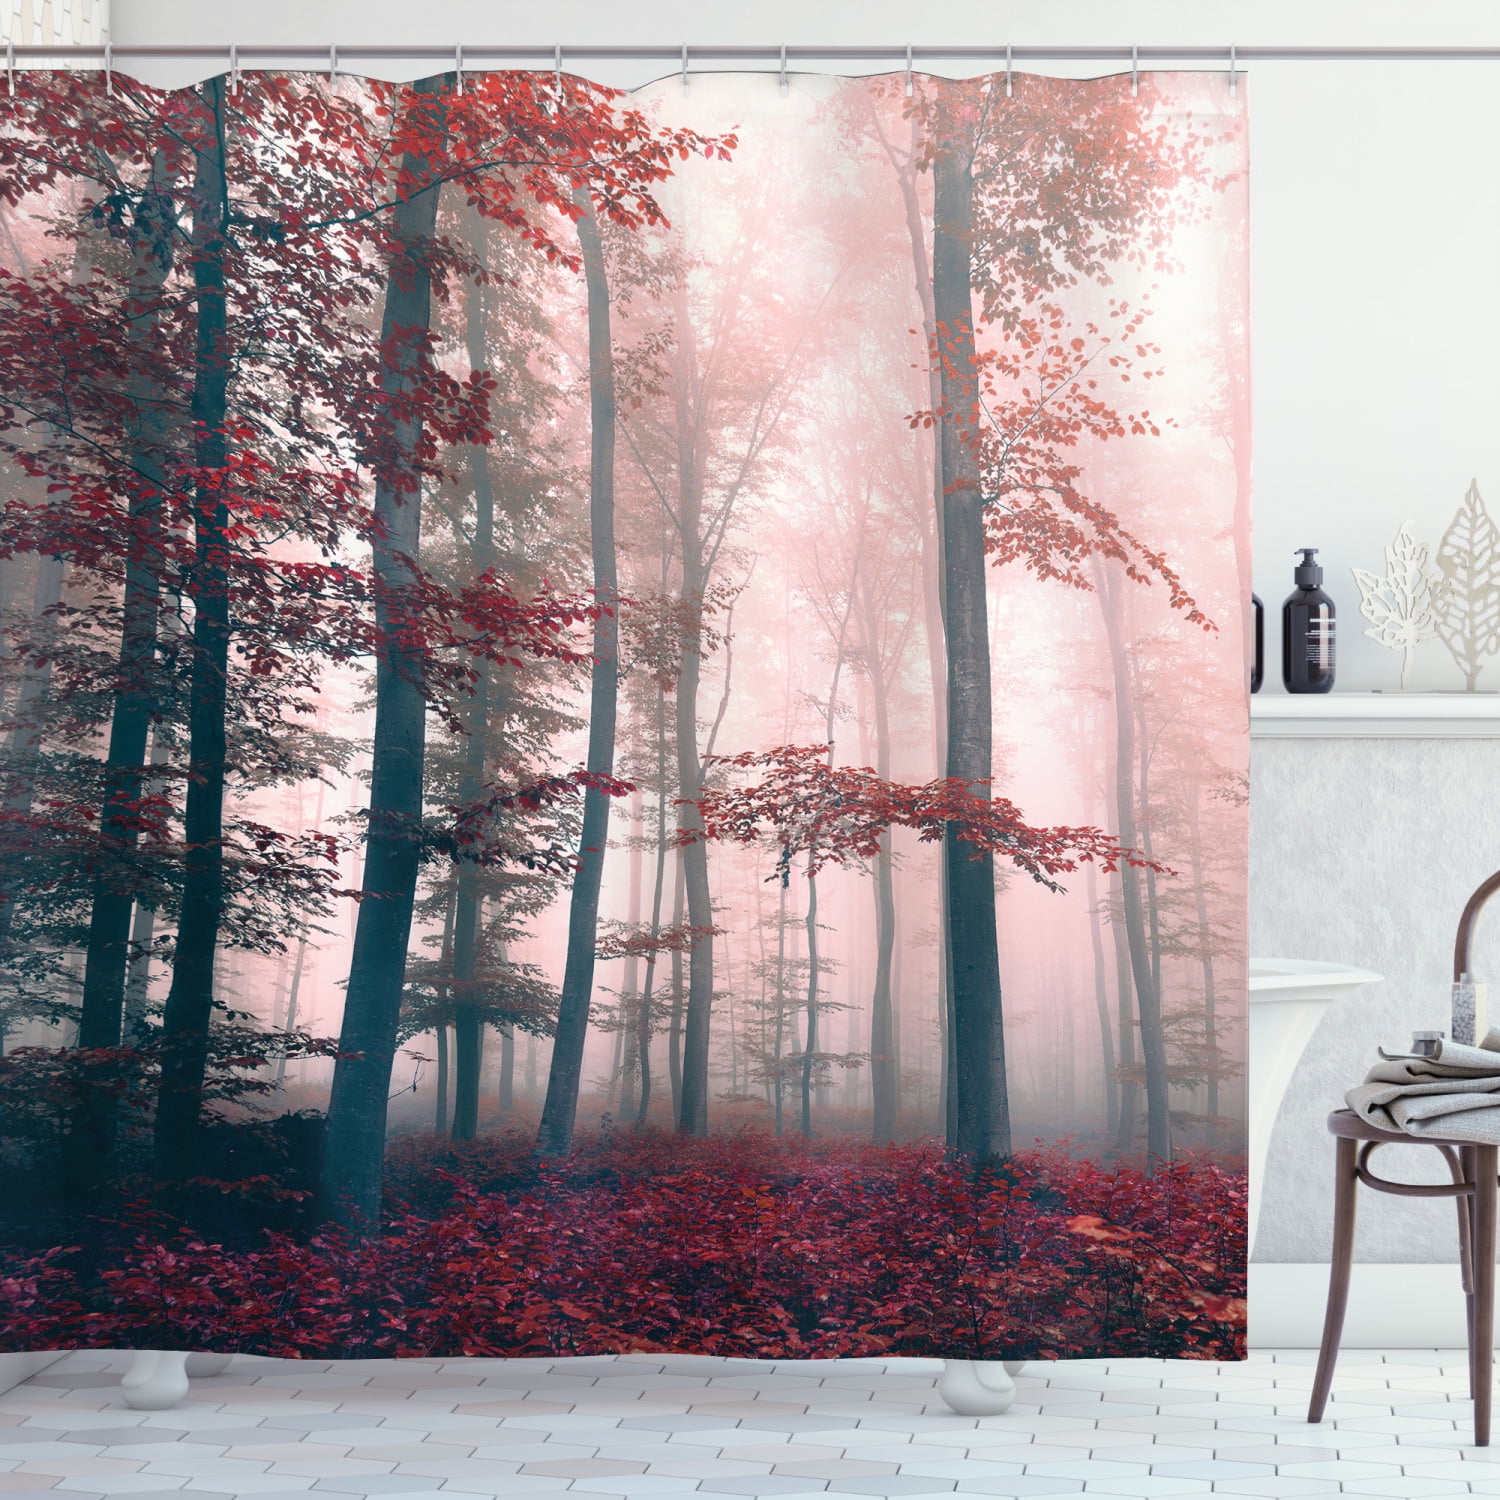 Misty and autumn forest Shower Curtain Bathroom Decor Fabric & 12hooks 71"